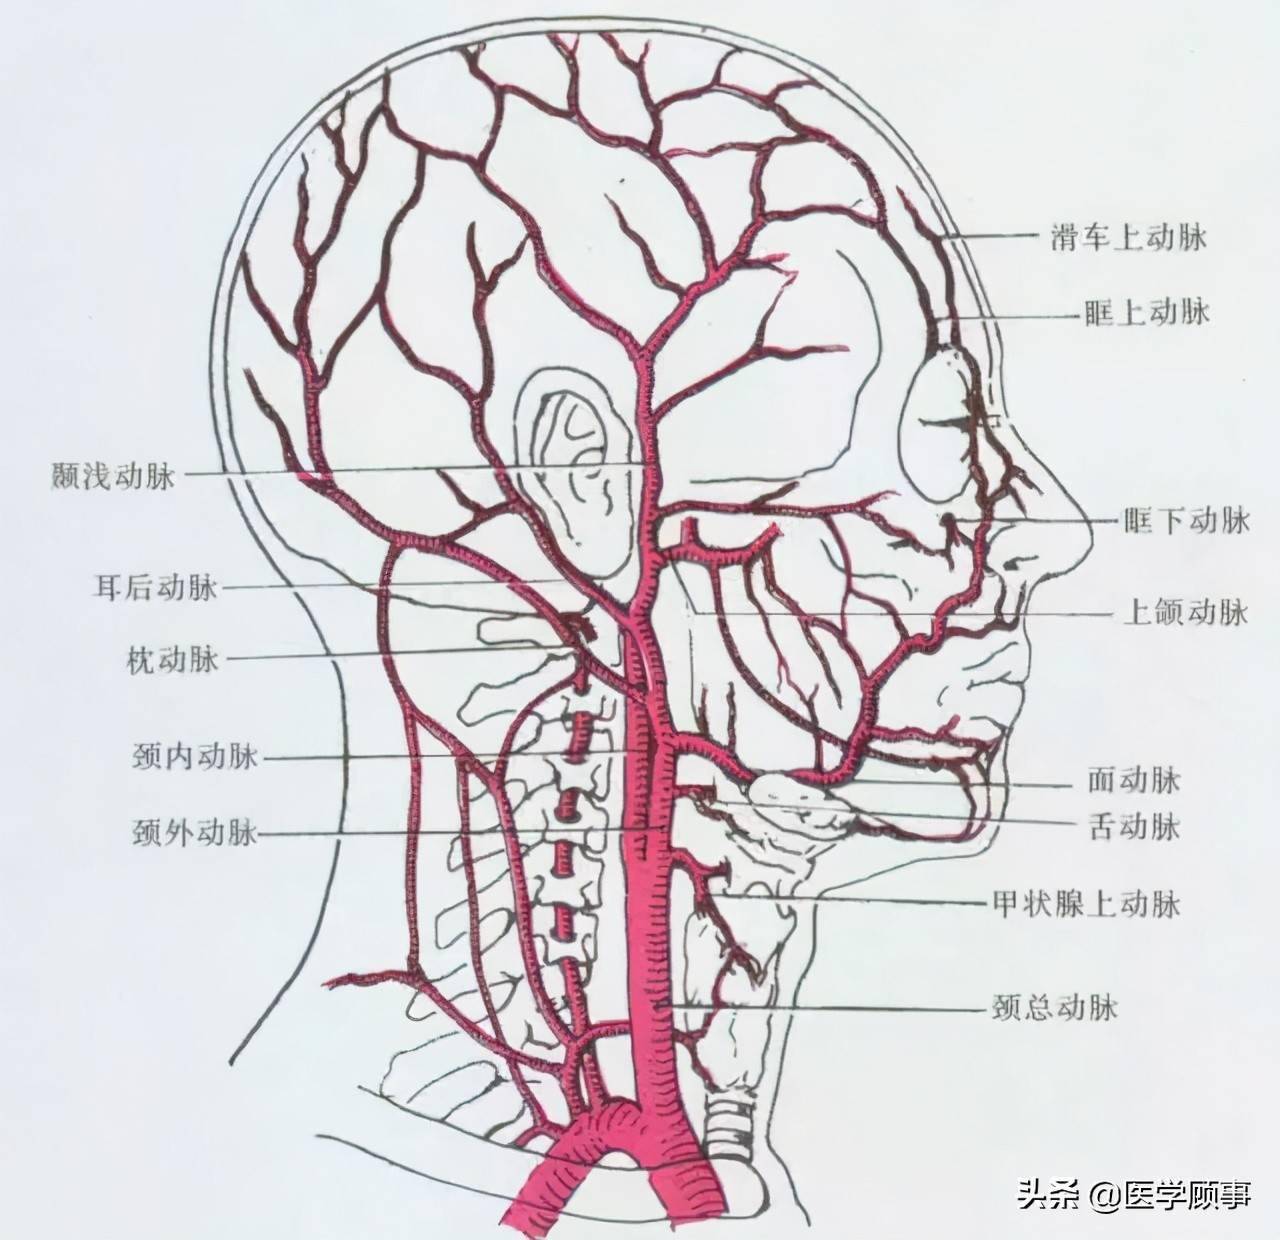 颈外动脉解剖示意图